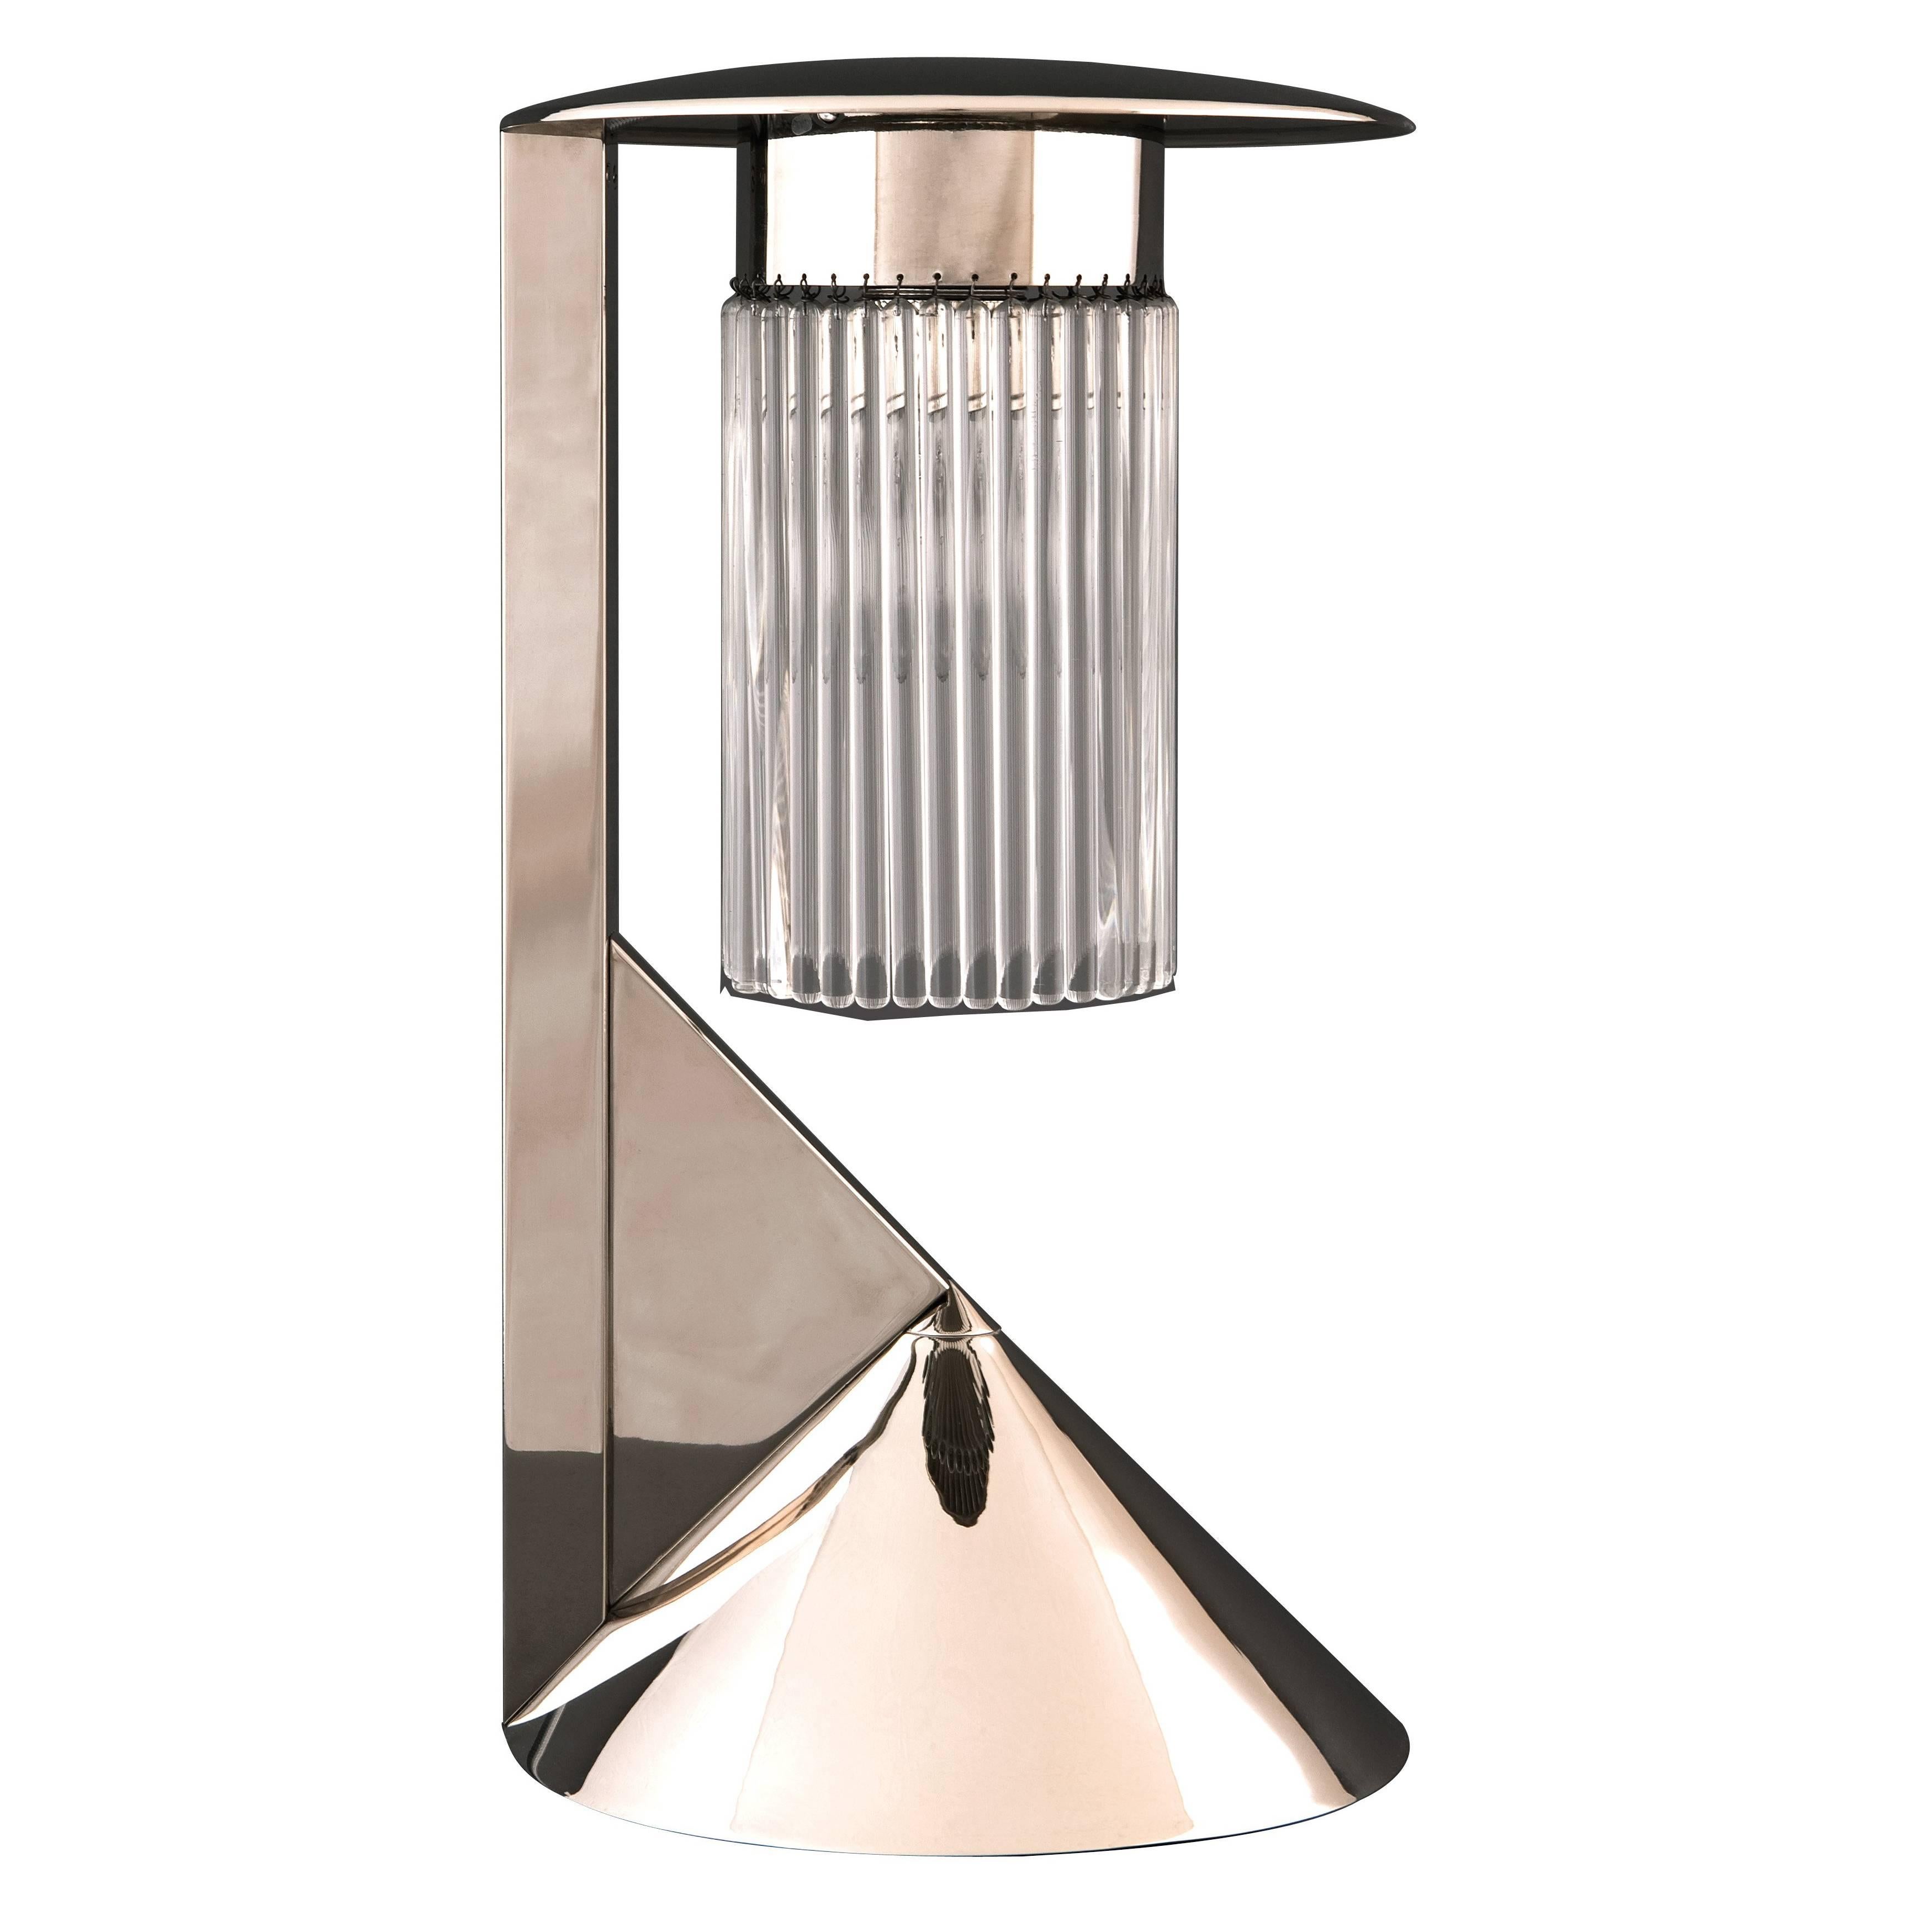 Koloman Moser & Wiener Werkstaette Jugendstil Table Lamp Re-Edition For Sale